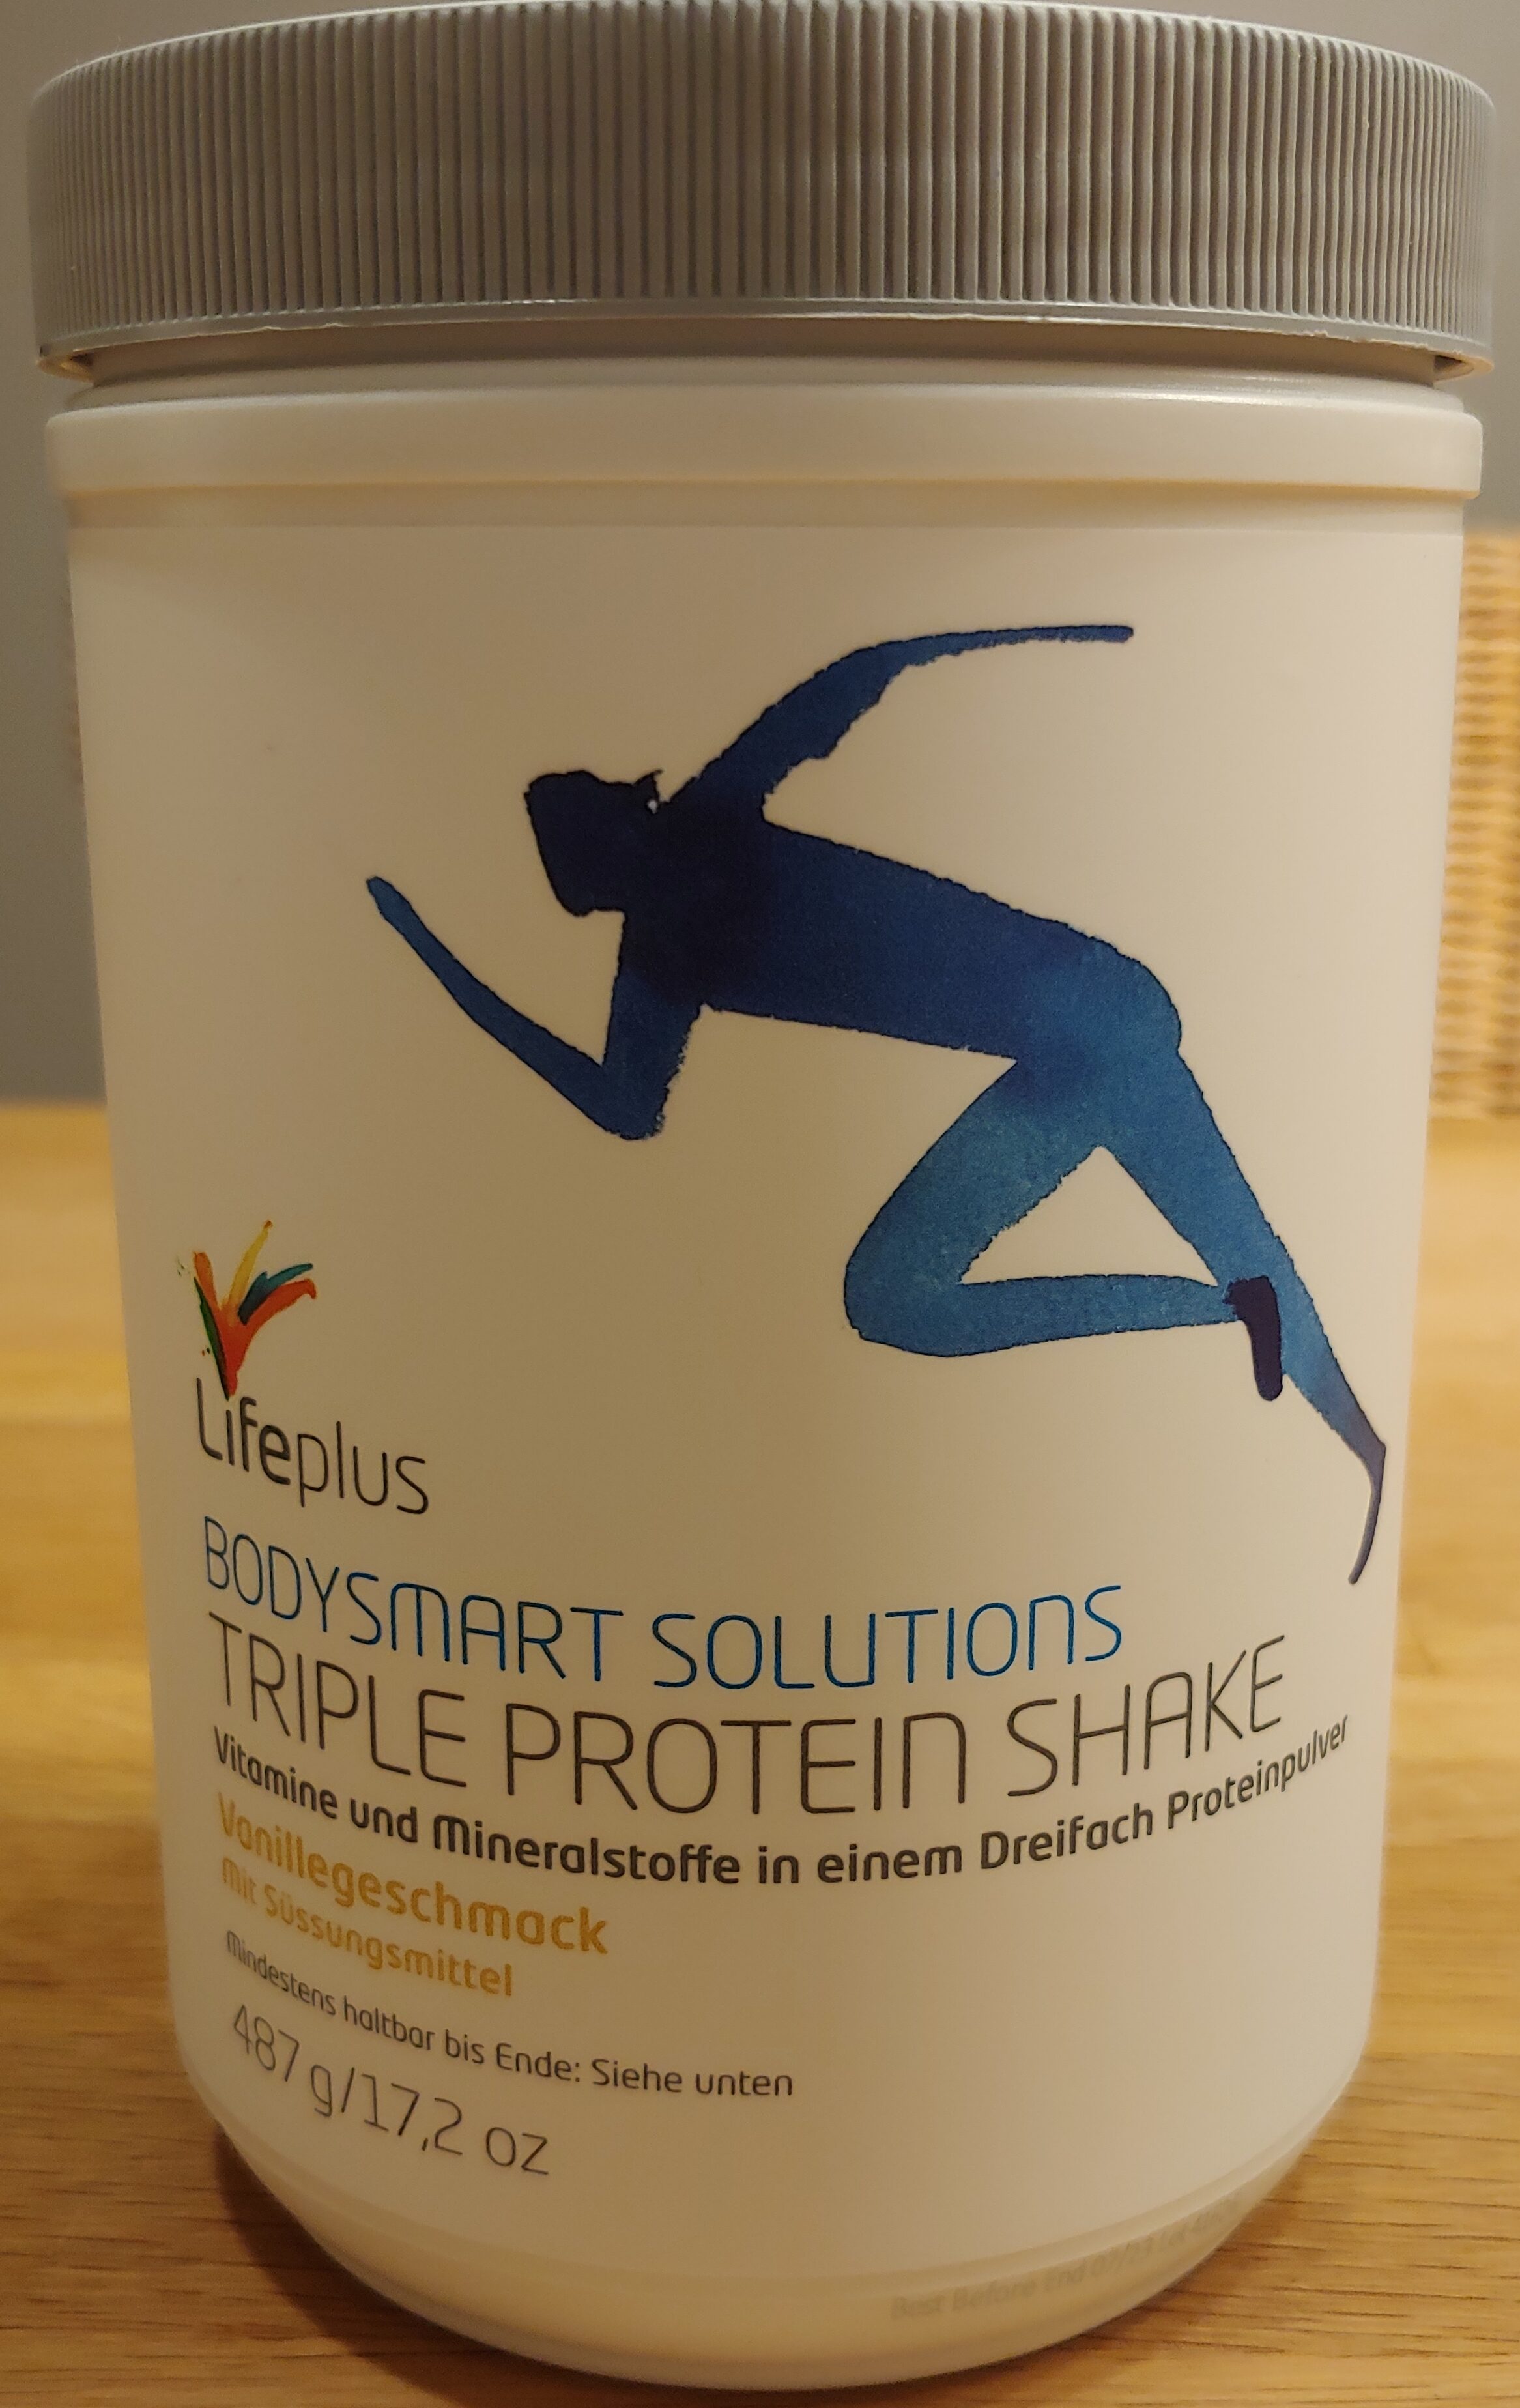 Triple Protein Shake Vanillegeschmack - Product - de